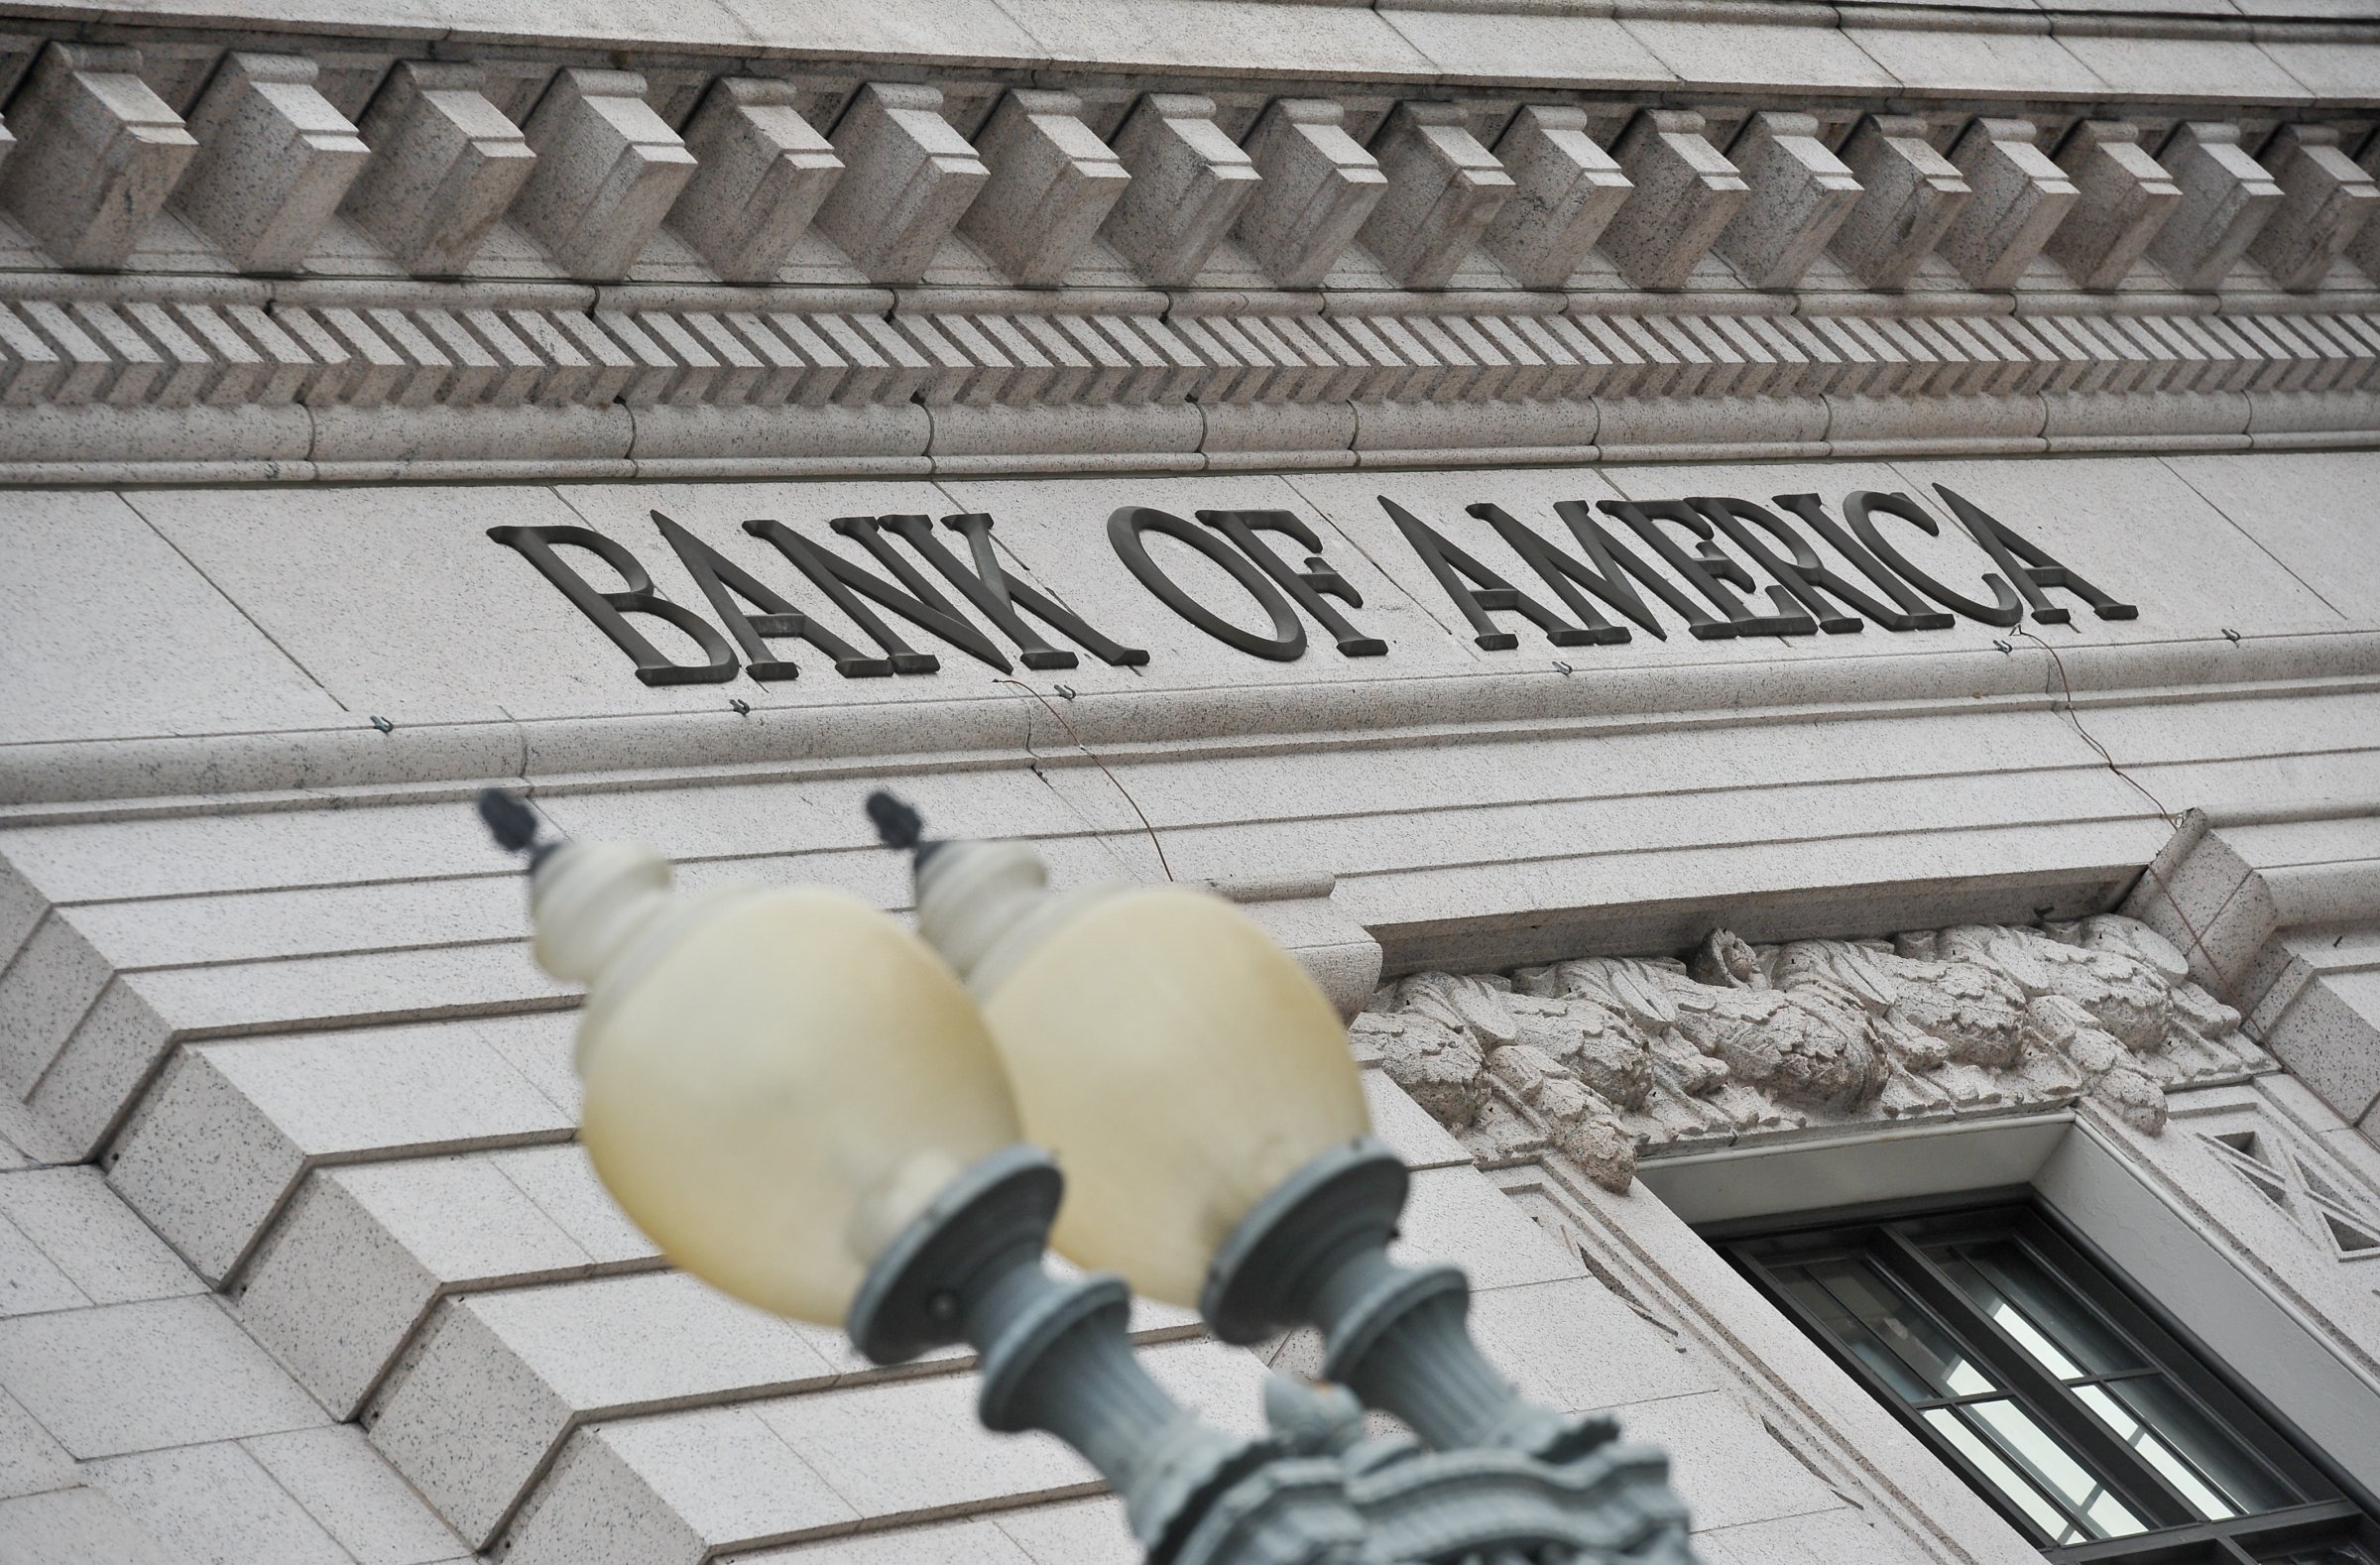 US-ECONOMY-FINANCE-BANKING-BOFA